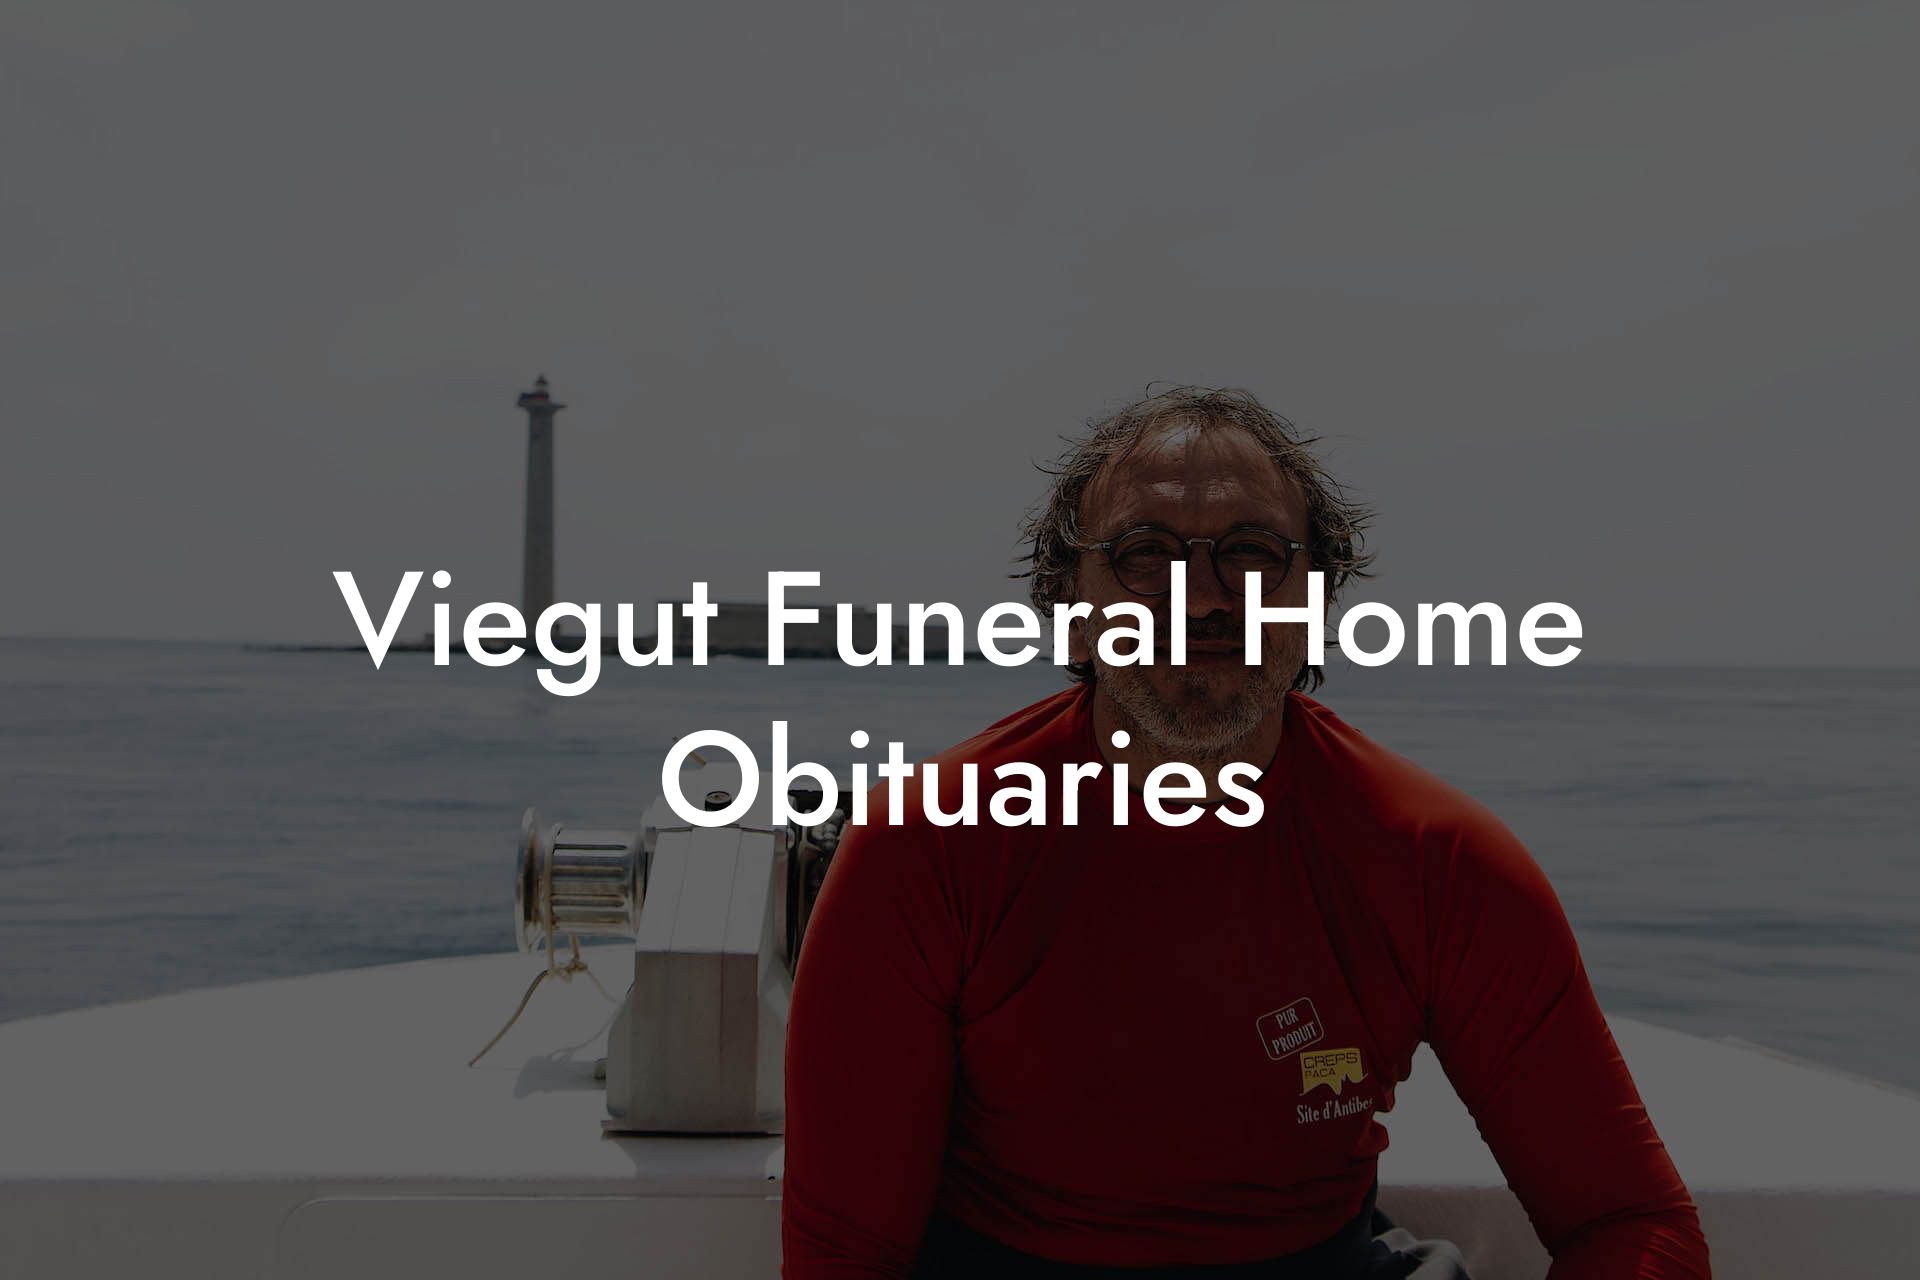 Viegut Funeral Home Obituaries